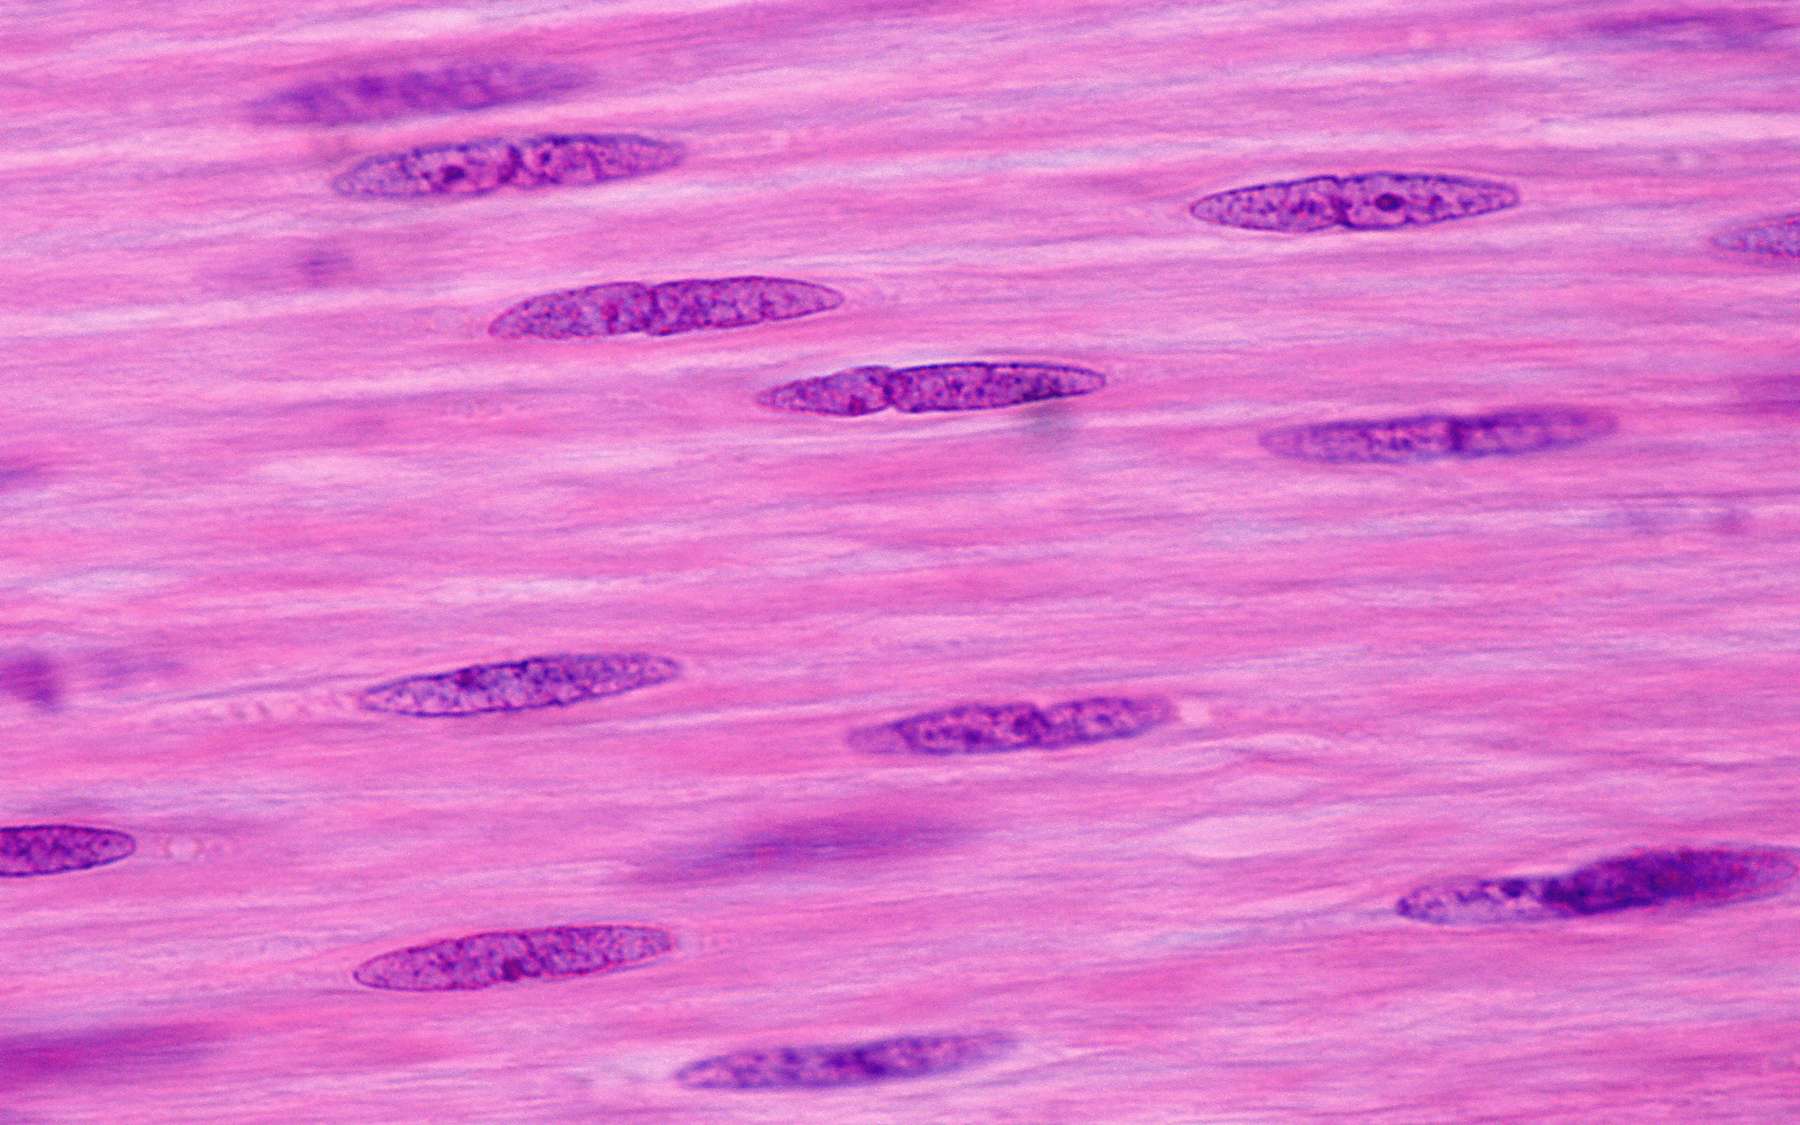 Des cellules de muscle lisse (CML). © JosLuis, Adobe Stock